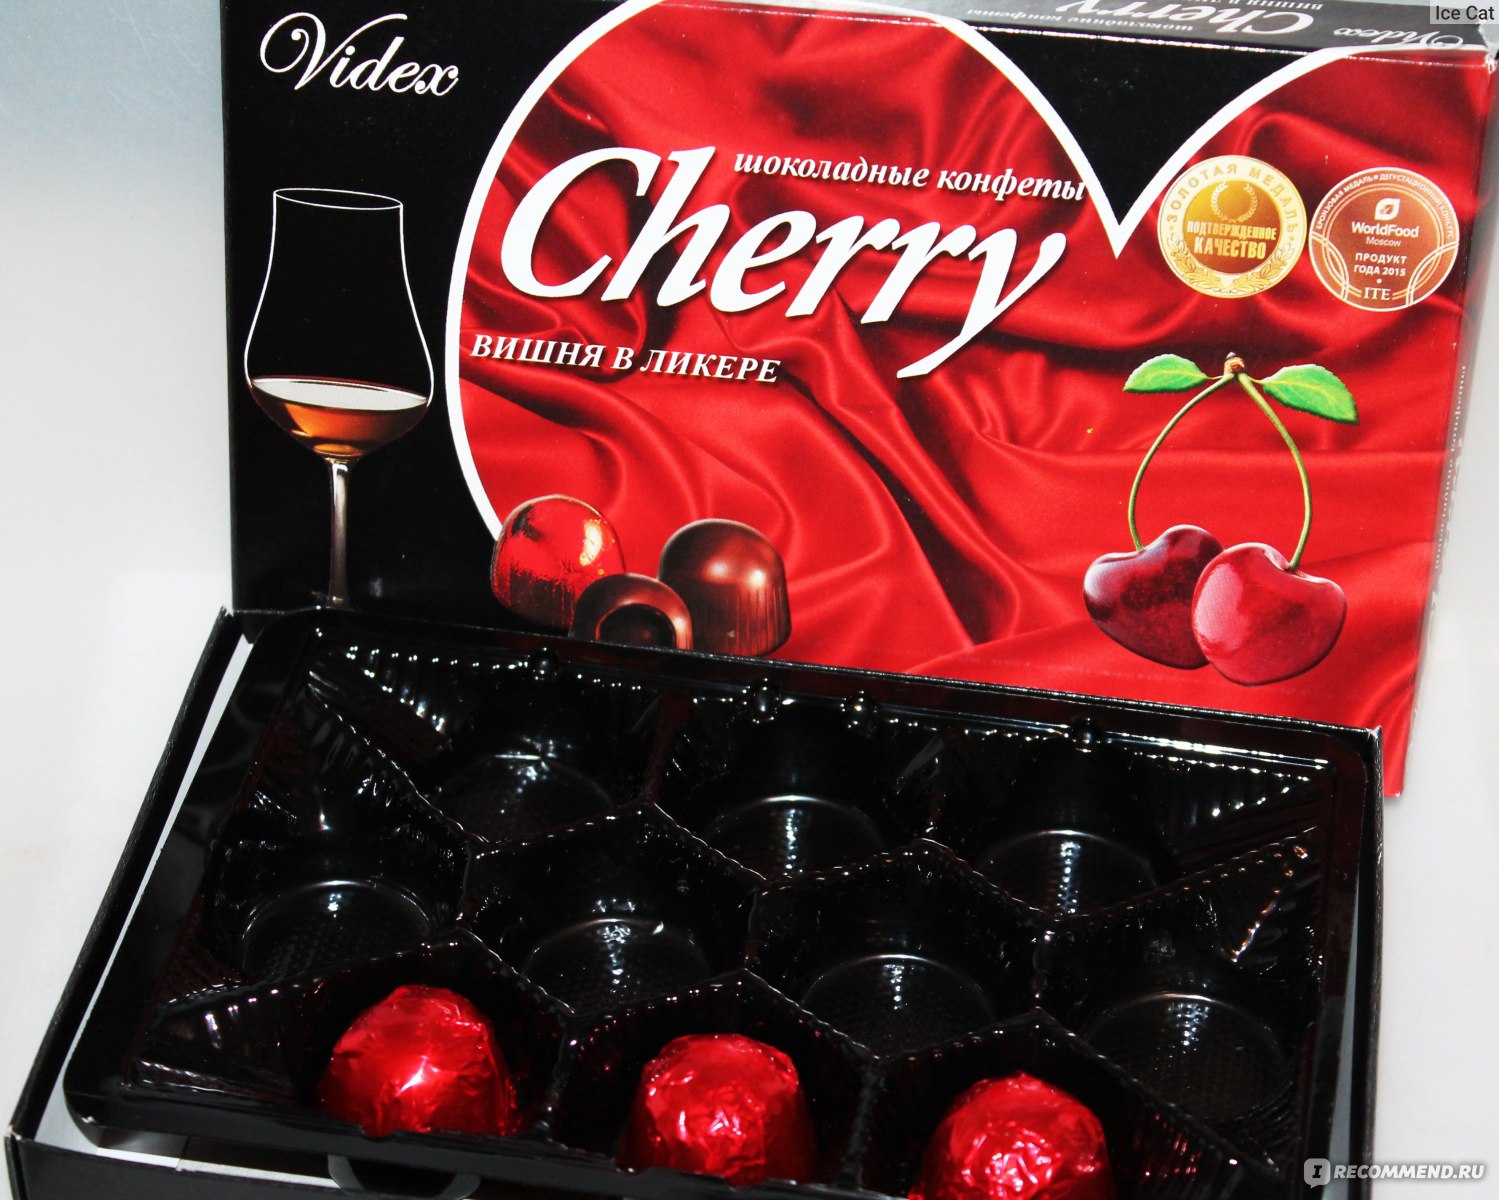 Шоколадные конфеты Cherry вишня в ликере Videx